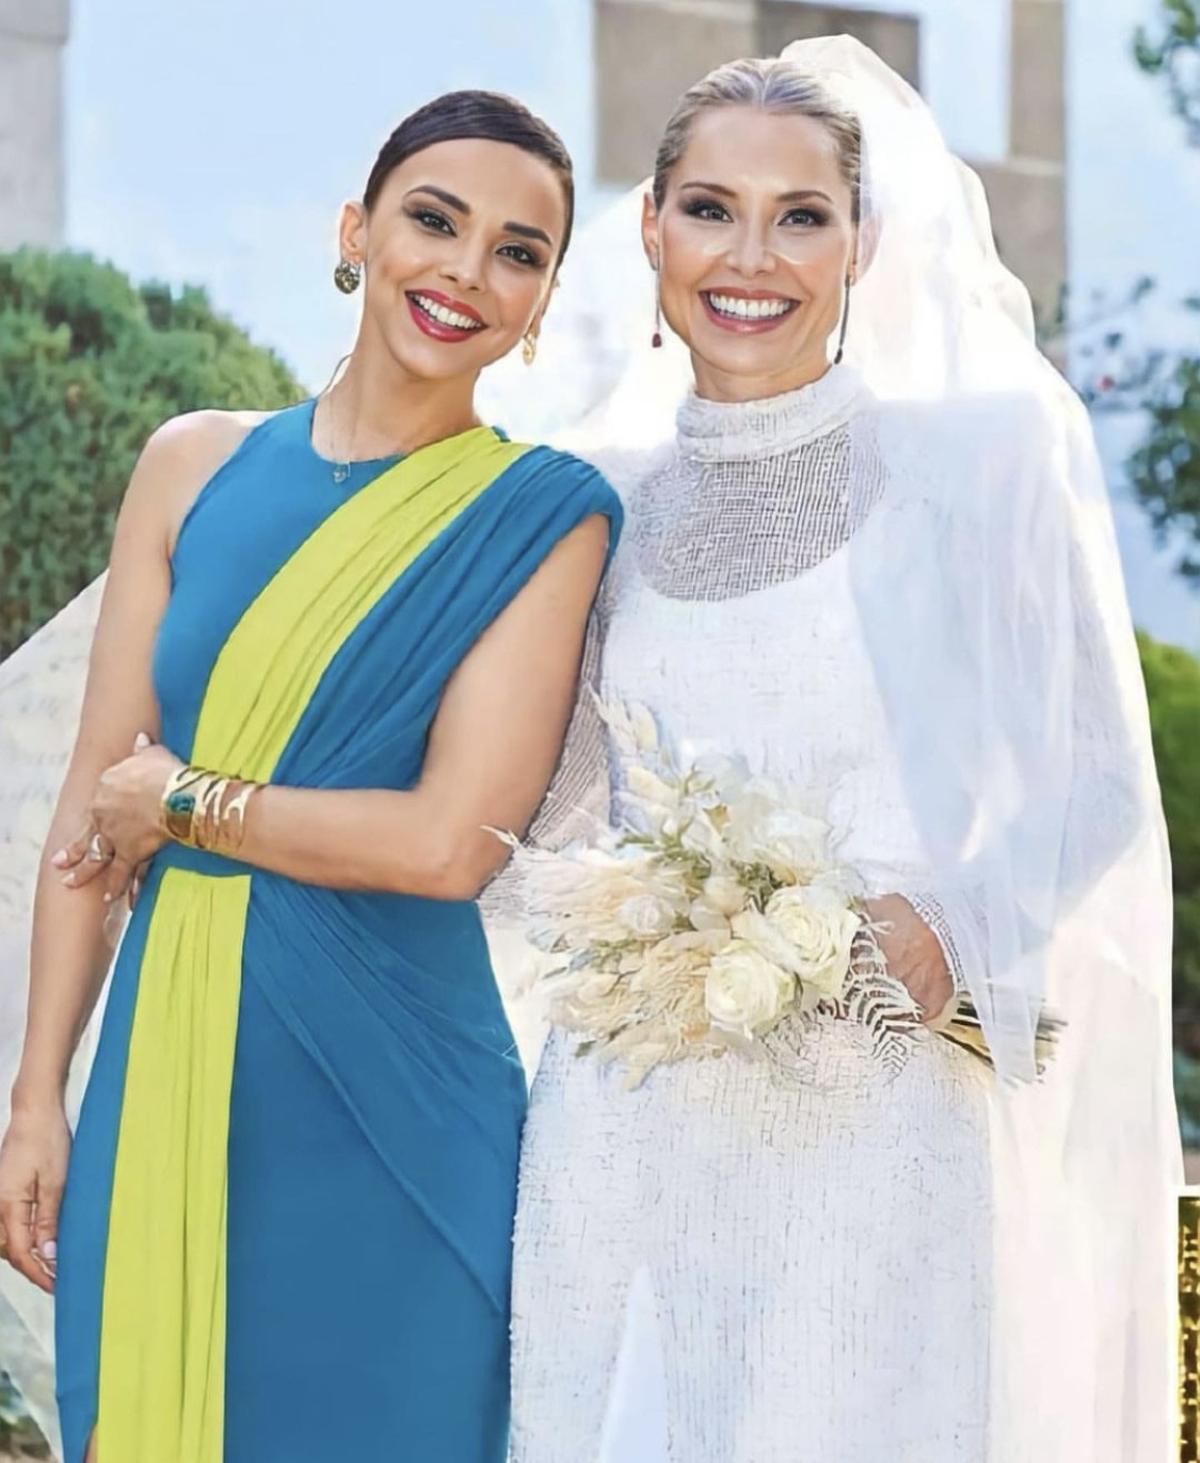 Chenoa y Soraya, juntas en la boda del pasado 15 de julio en Cáceres.